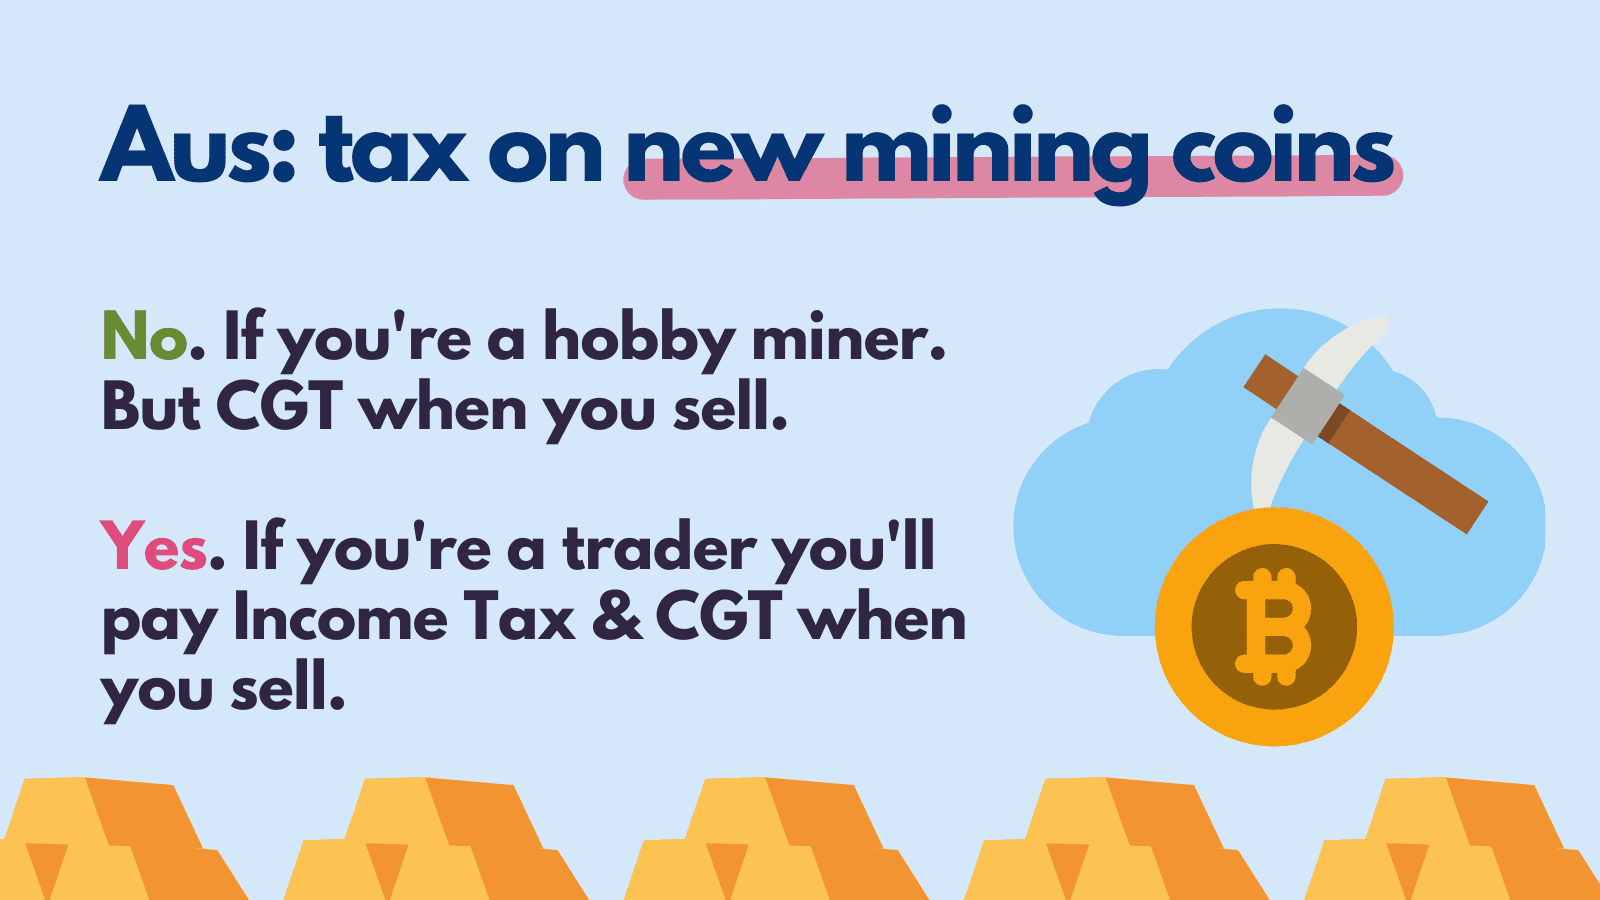 Crypto mining taxes UK